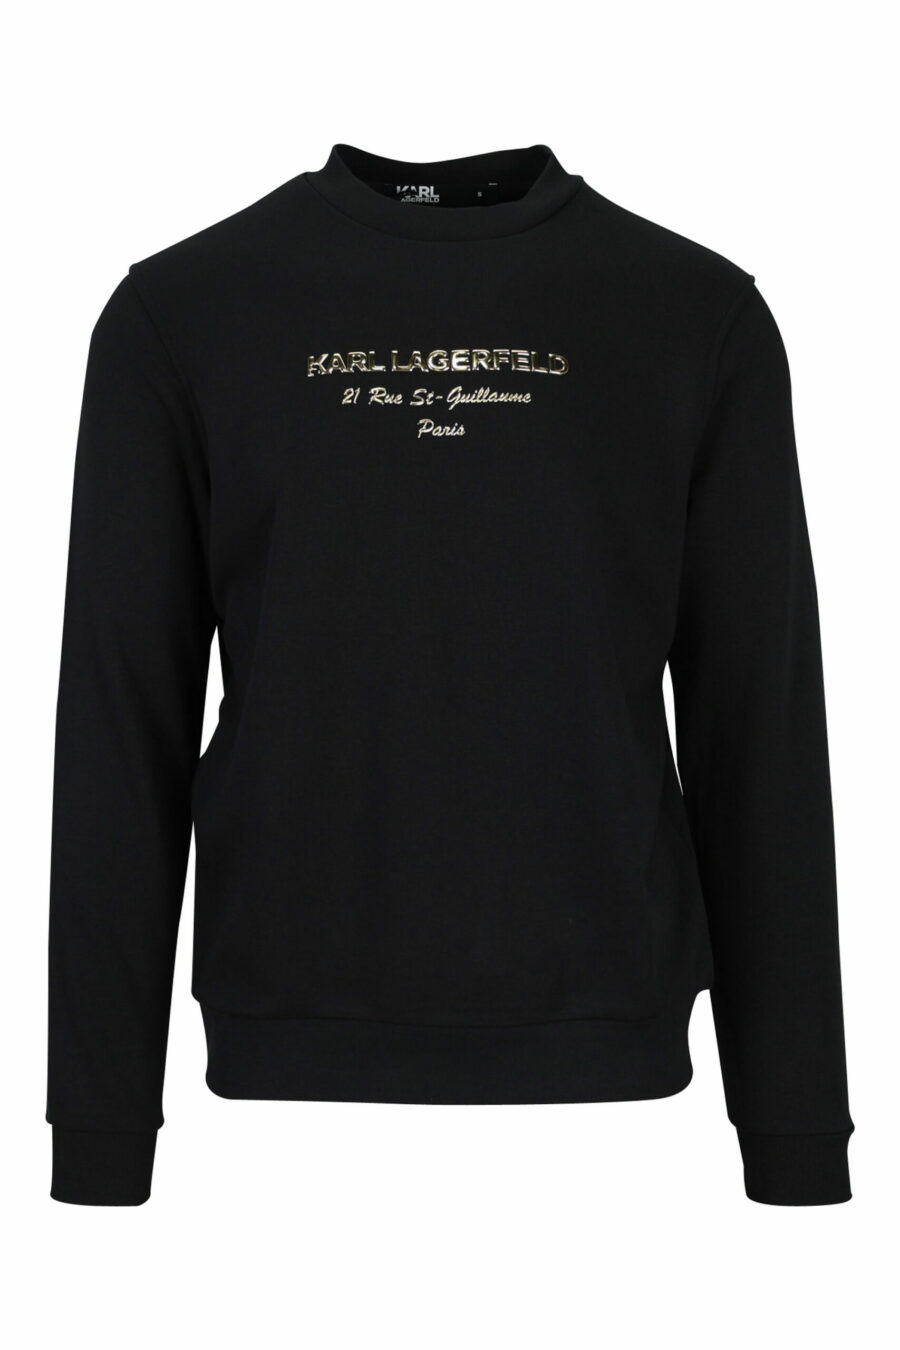 Schwarzes Sweatshirt mit "rue st guillaume" Logo in goldener Schrift - 4062226648271 skaliert